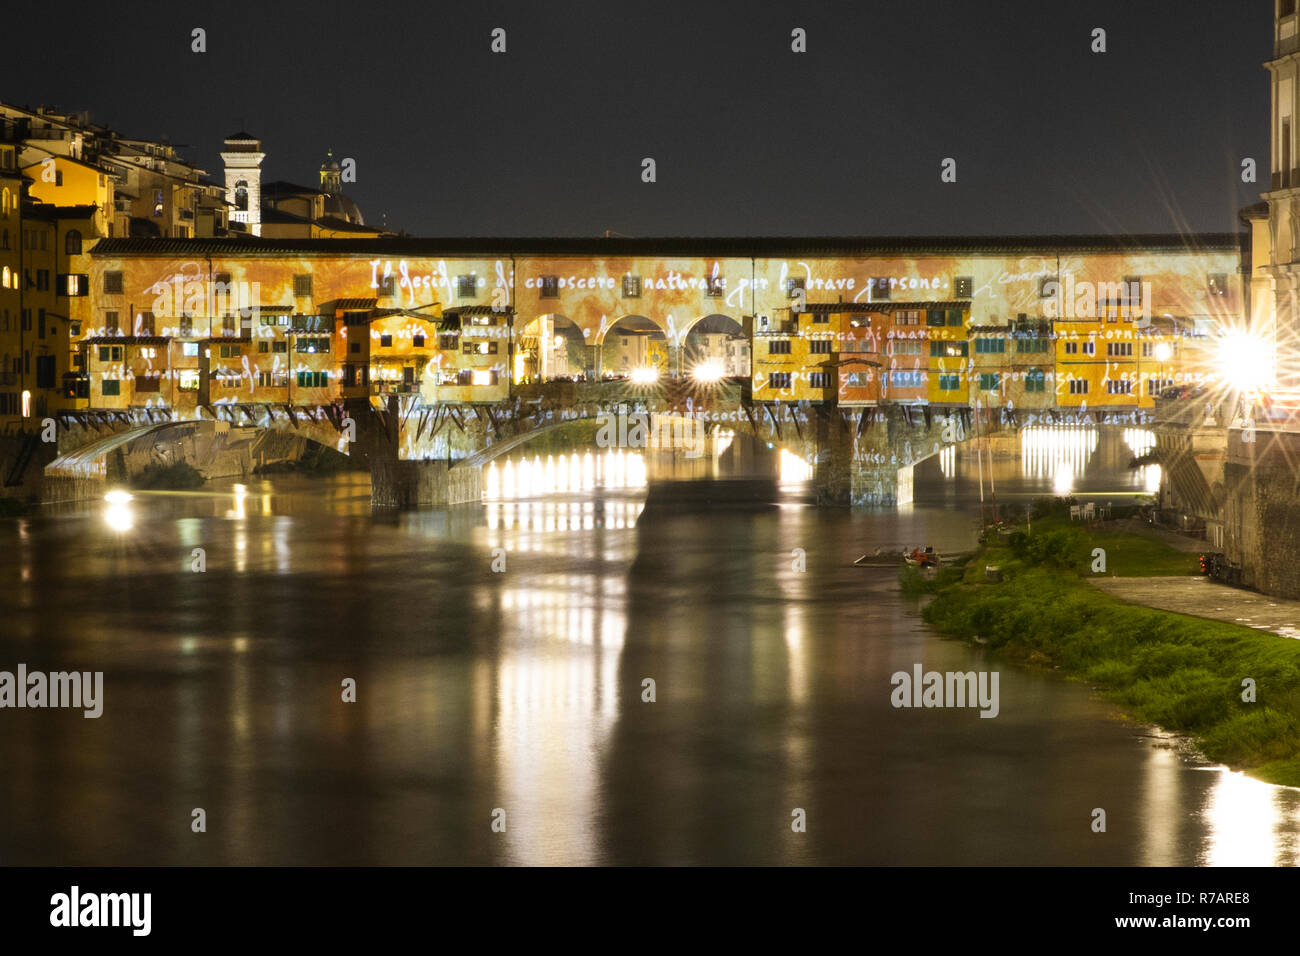 Florenz, Italien. 8. Dez 2018. Die Weihnachtsbeleuchtung Leuchten in  Florenz. Der Ponte Vecchio in Florenz ist von einem videomapping, dass  Projekte das Genie von Leonardo da Vinci die Umwandlung der Brücke in